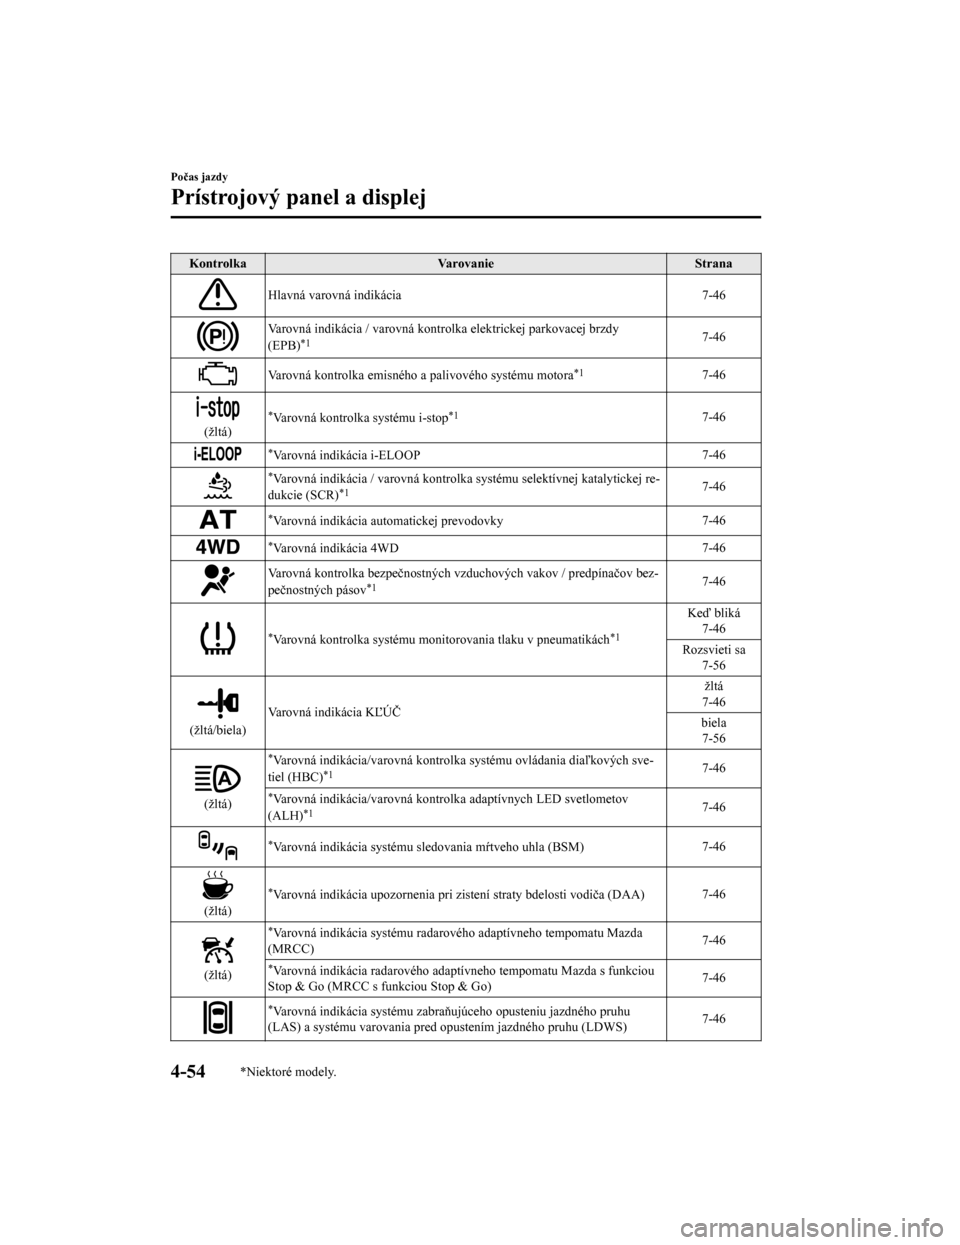 MAZDA MODEL CX-5 2019  Užívateľská príručka (in Slovak) KontrolkaVarovanie Strana
Hlavná varovná indikácia 7-46
Varovná indikácia / varovná kontrolka elektrickej parkovacej brzdy
(EPB)*17-46
Varovná kontrolka emisného  a palivového systému motora